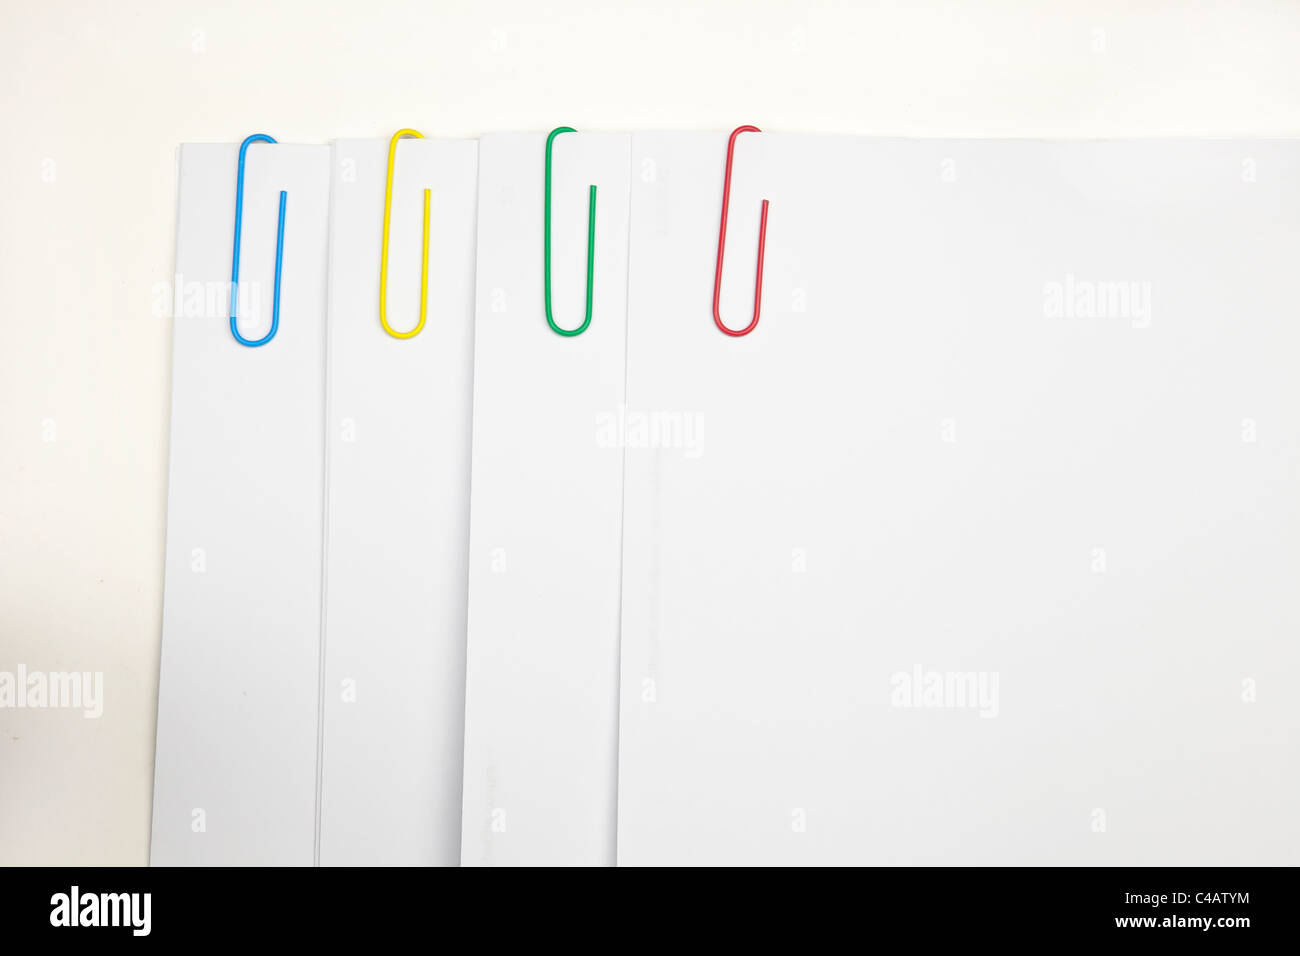 Clip di carta in quattro diversi colori - blu, verde, giallo, rosso, mantenere il bianco insieme fogli di carta Foto Stock